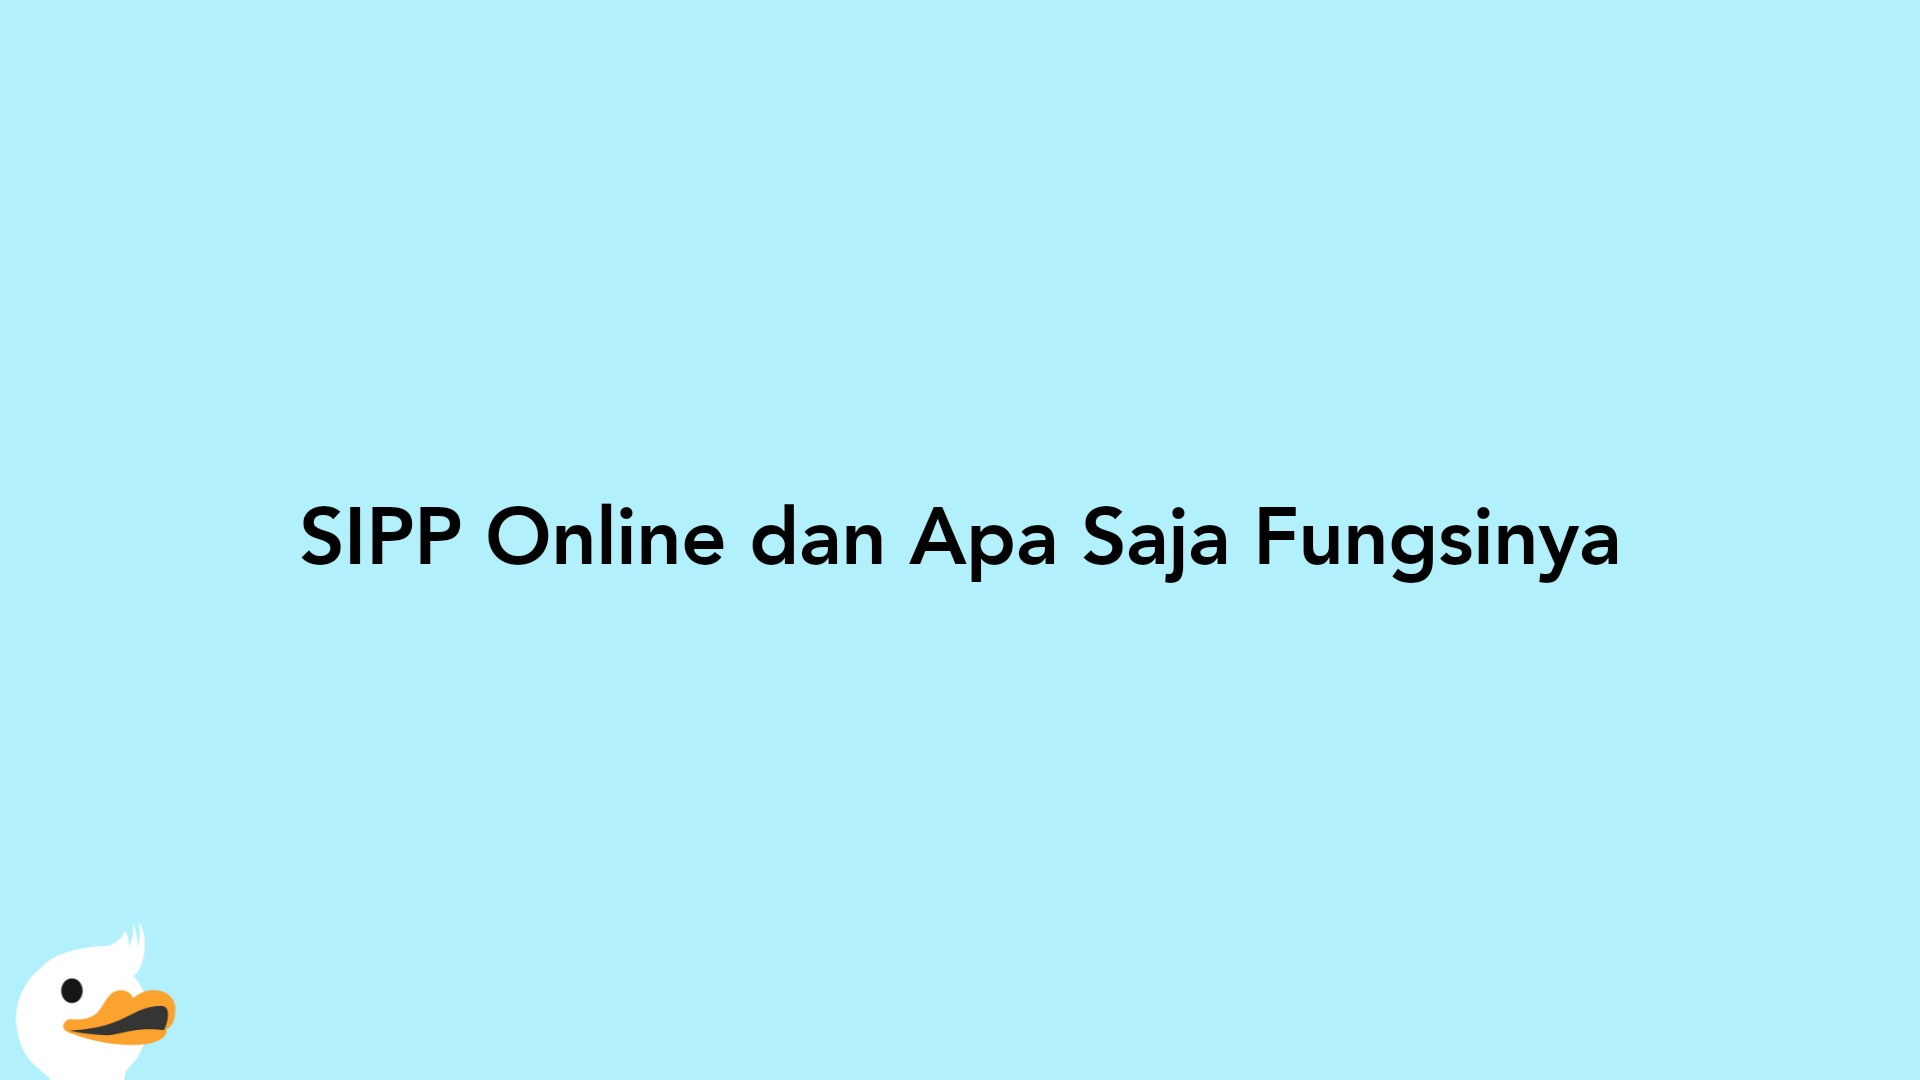 SIPP Online dan Apa Saja Fungsinya